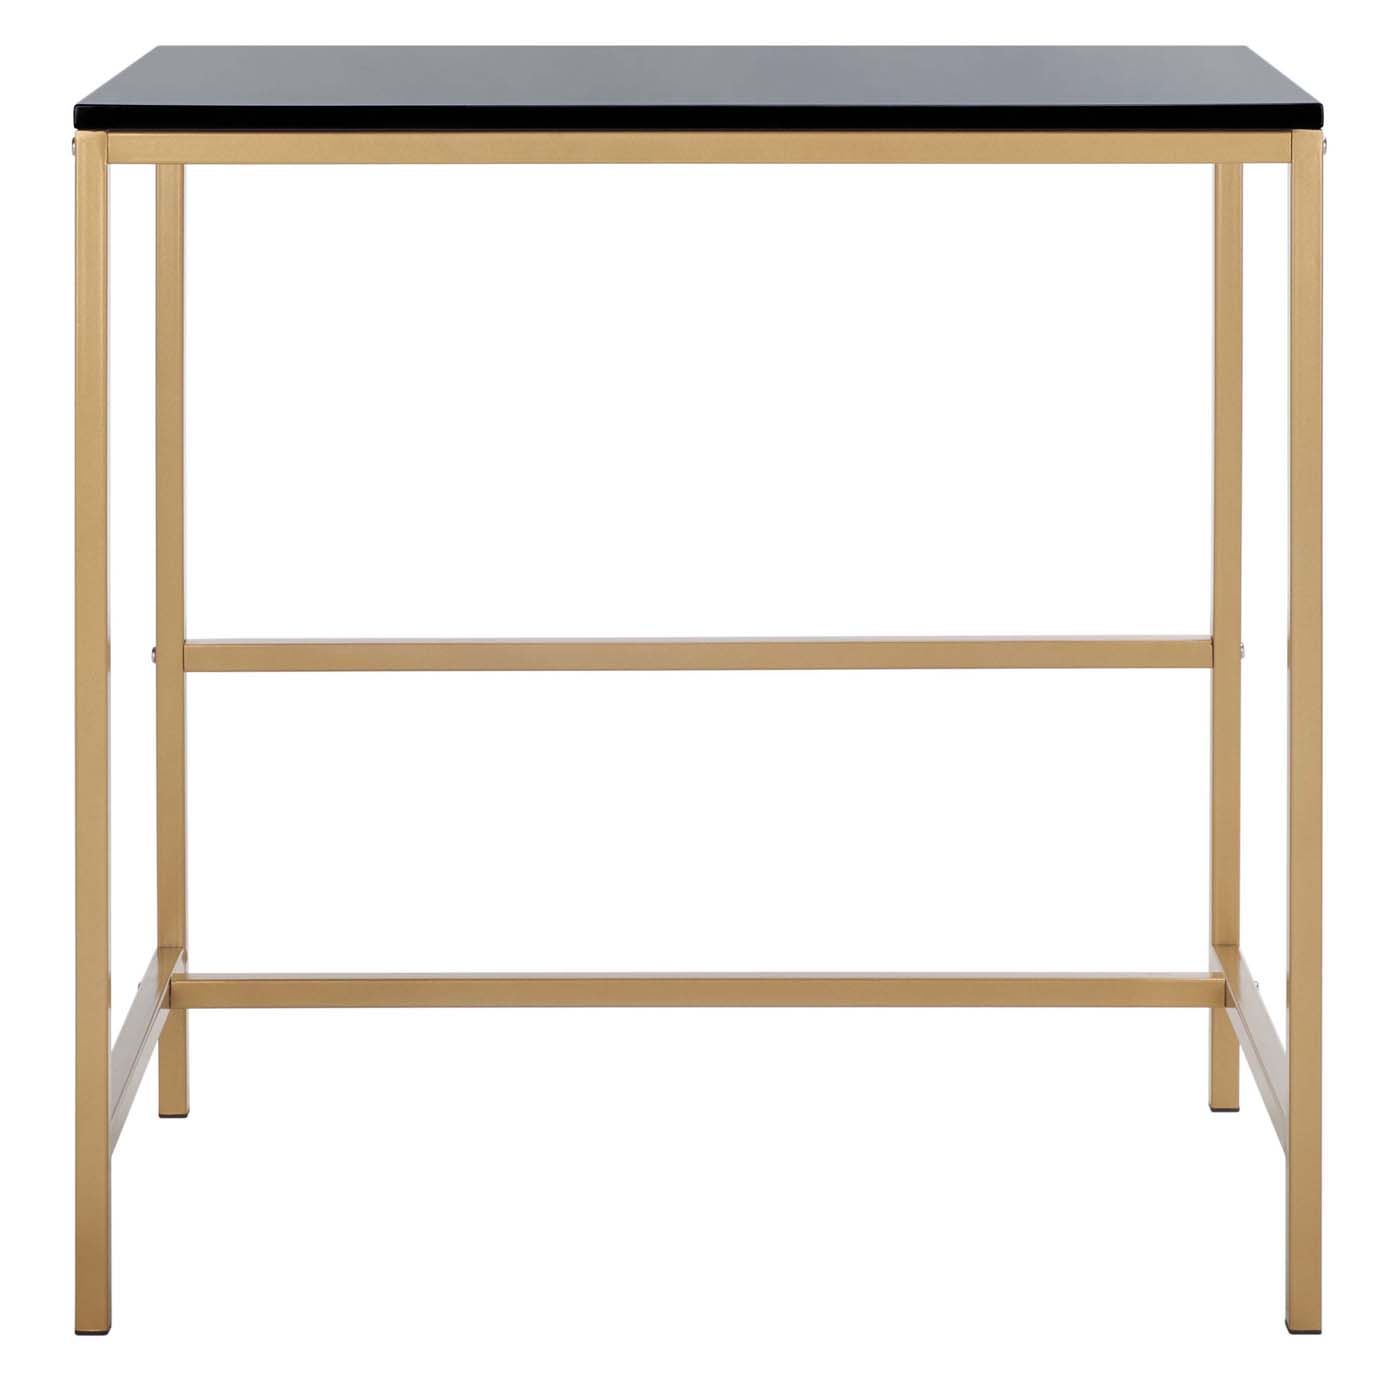 Safavieh Viv Glossy Wooden Desk , DSK5801 - Black / Gold